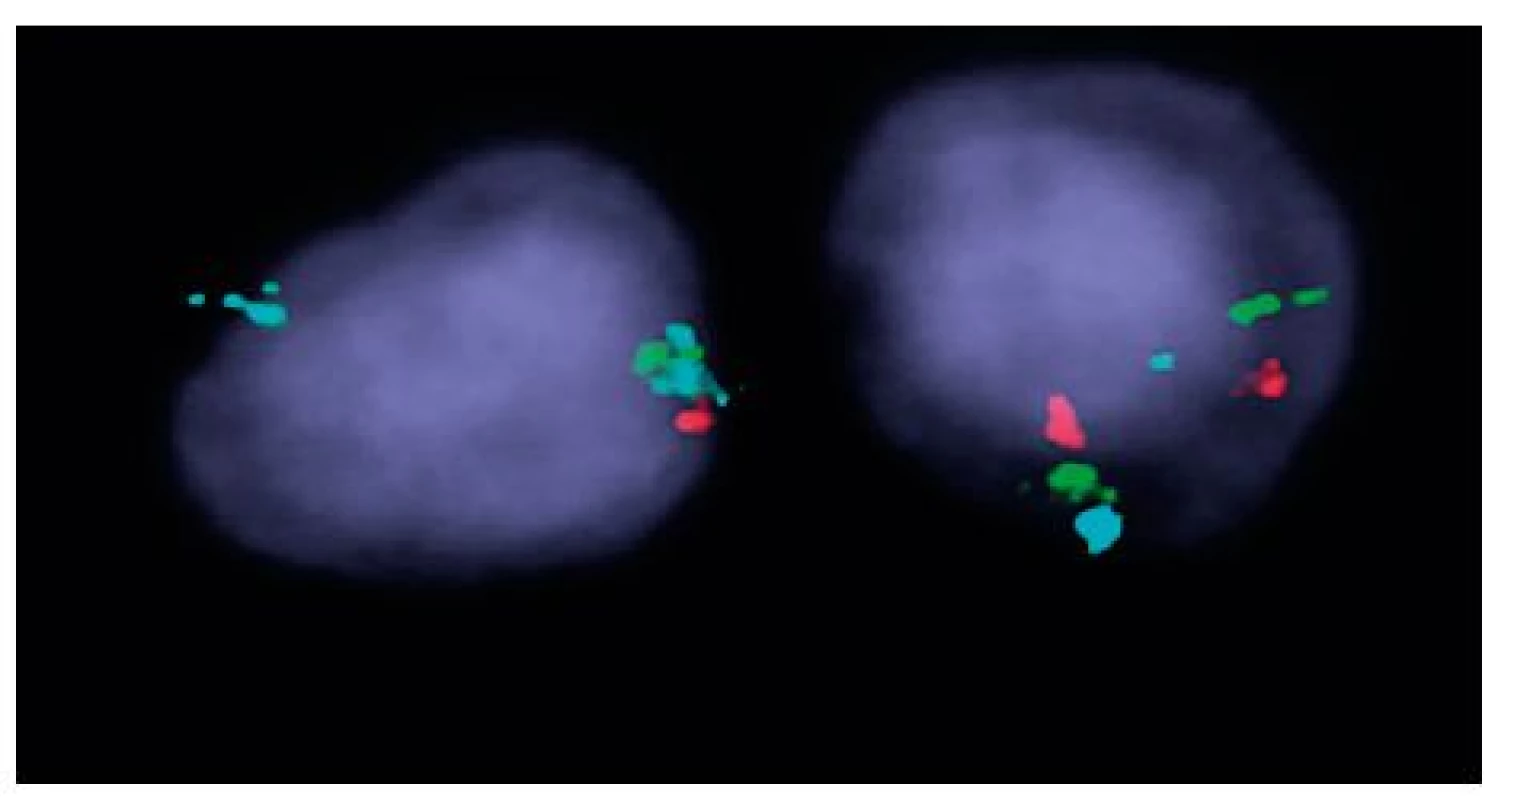 Výsledek I-FISH na separovaných CD34+ buňkách u nemocné č. 1 Trojbarevná sonda ON MDS 5q- EGR1 5q31; CSF1R 5q33/hTERT 5p15; vlevo buňka s delecí oblasti 5q31 a 5q33 (zelený signál 1krát a červený signál 1krát), modrý kontrolní signál (2krát) pro oblast 5p15, vpravo buňka 
s normálním nálezem.